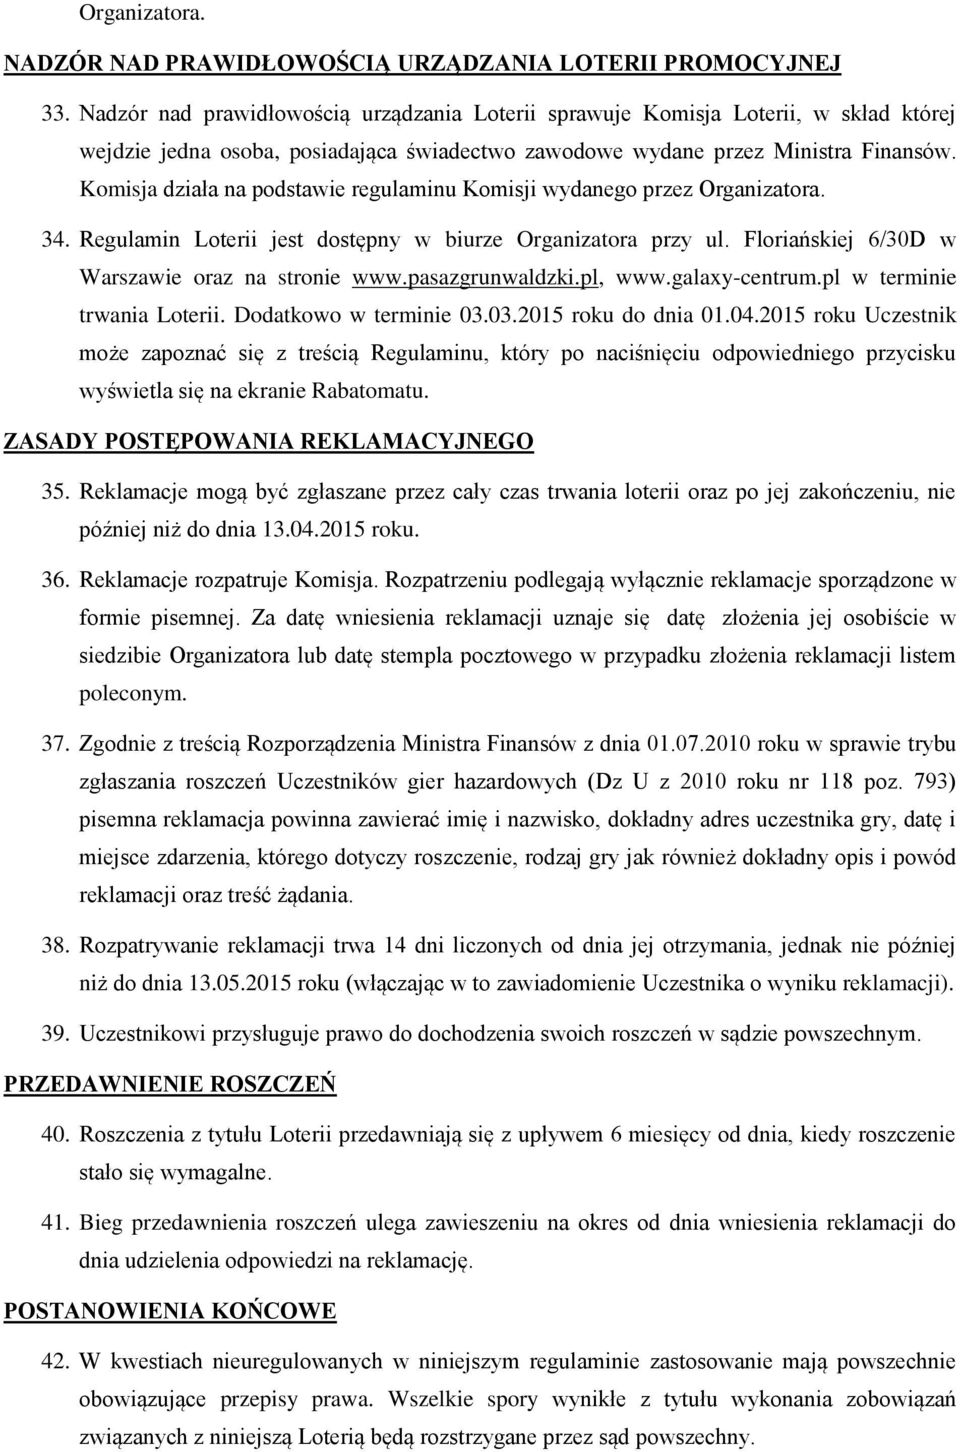 Komisja działa na podstawie regulaminu Komisji wydanego przez Organizatora. 34. Regulamin Loterii jest dostępny w biurze Organizatora przy ul. Floriańskiej 6/30D w Warszawie oraz na stronie www.